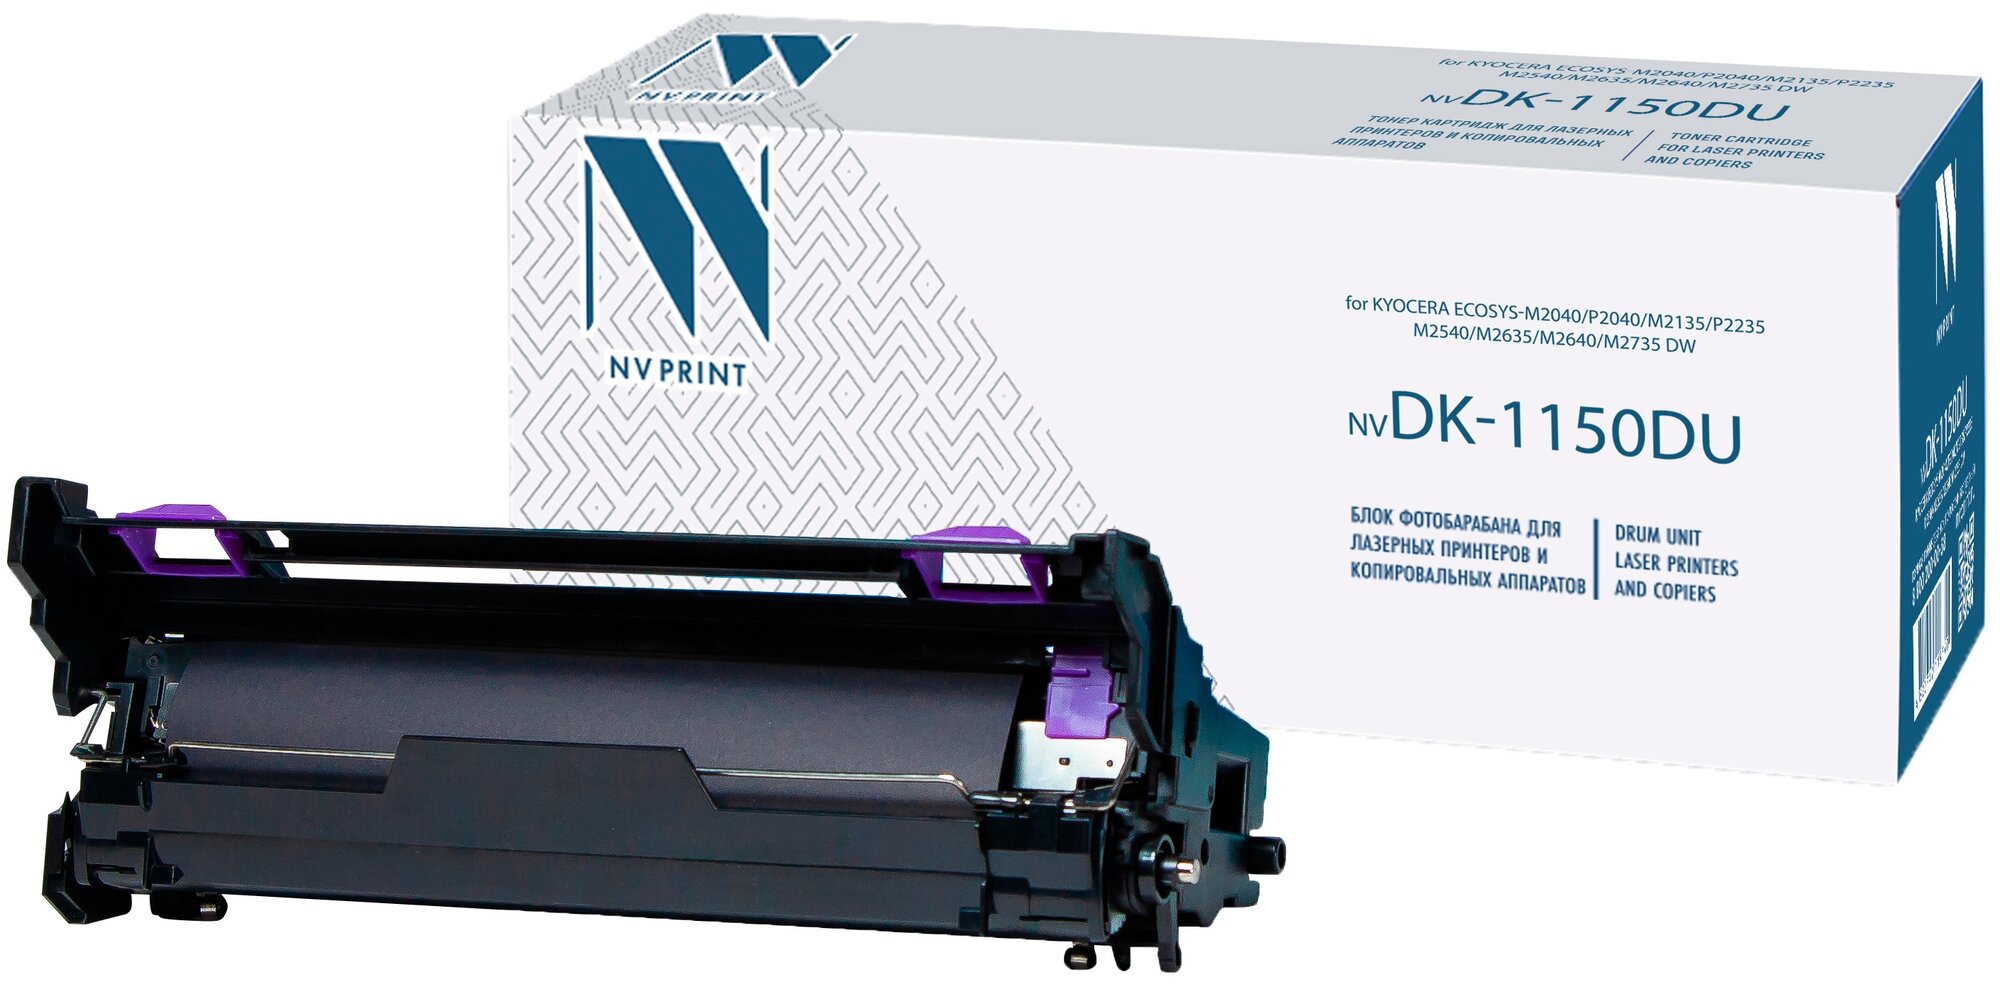 Фотобарабан NV Print NV-DK-1150 DU, для Kyocera EcoSys-M2040/P2040/M2135/P2235/M2540/M2635/M2640/M2735 dw, черный, 100000 стр, 1 цвет